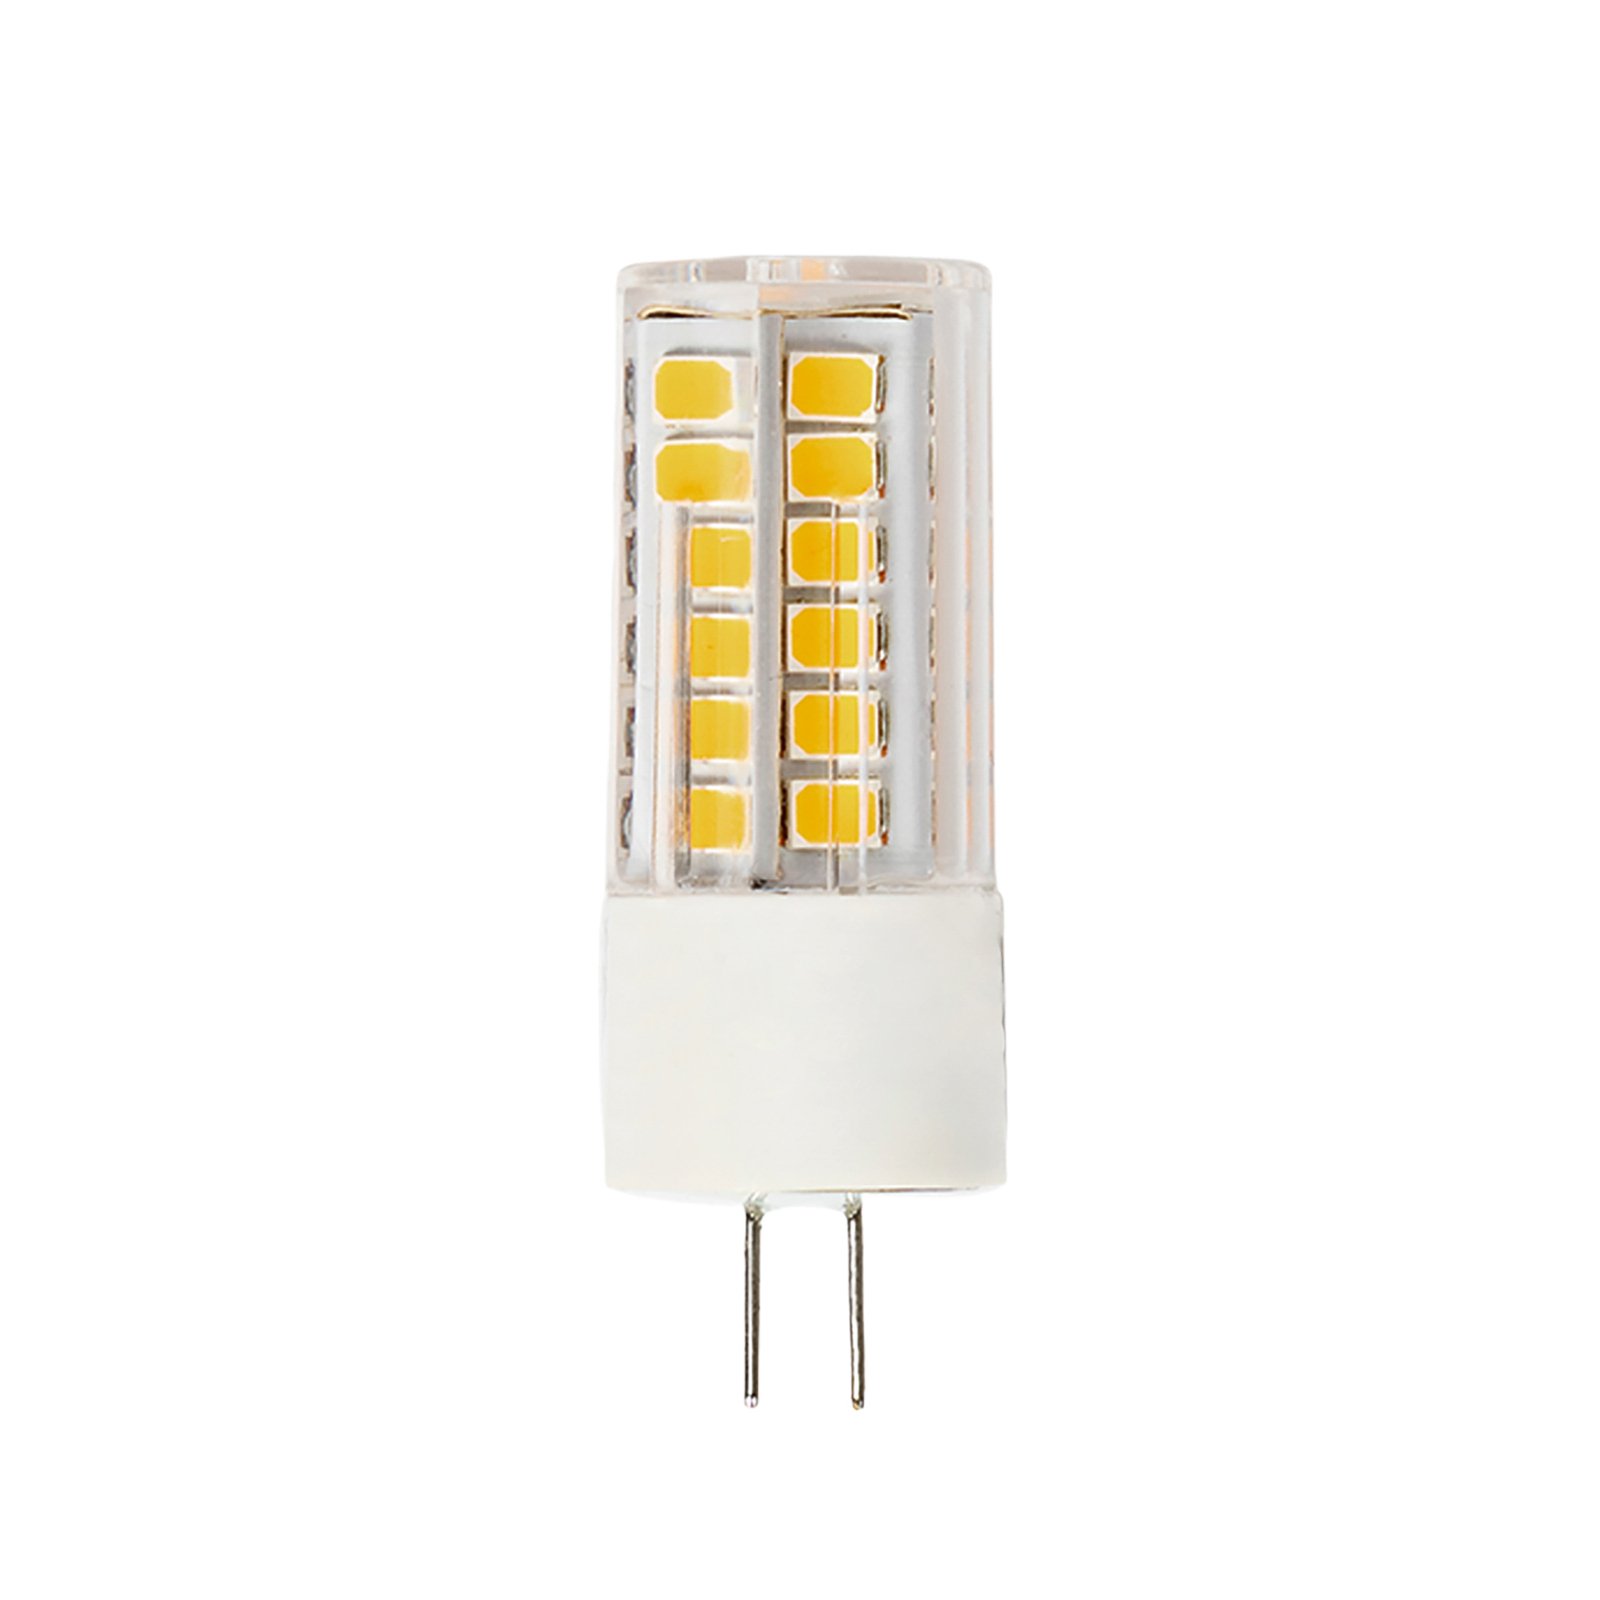 Arcchio bi-pin LED bulb G4 3.4 W 3,000 K